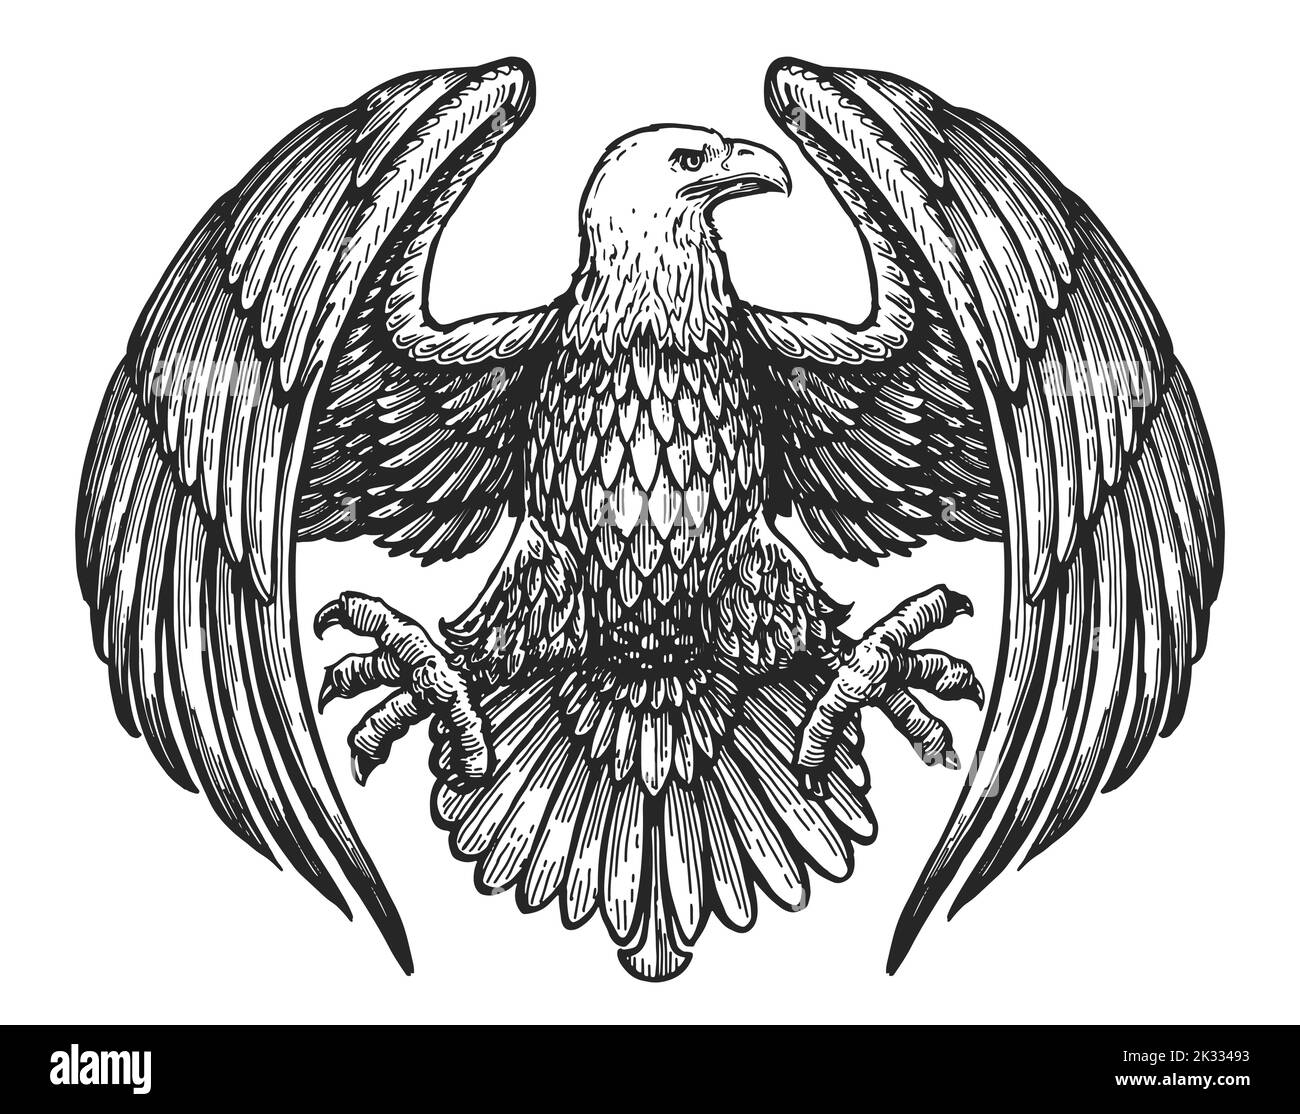 Adler mit ausgebreiteten Flügeln. Königliches Symbol. Handgezeichnete Skizze im Vintage-Gravurstil. Vektorgrafik Stock Vektor